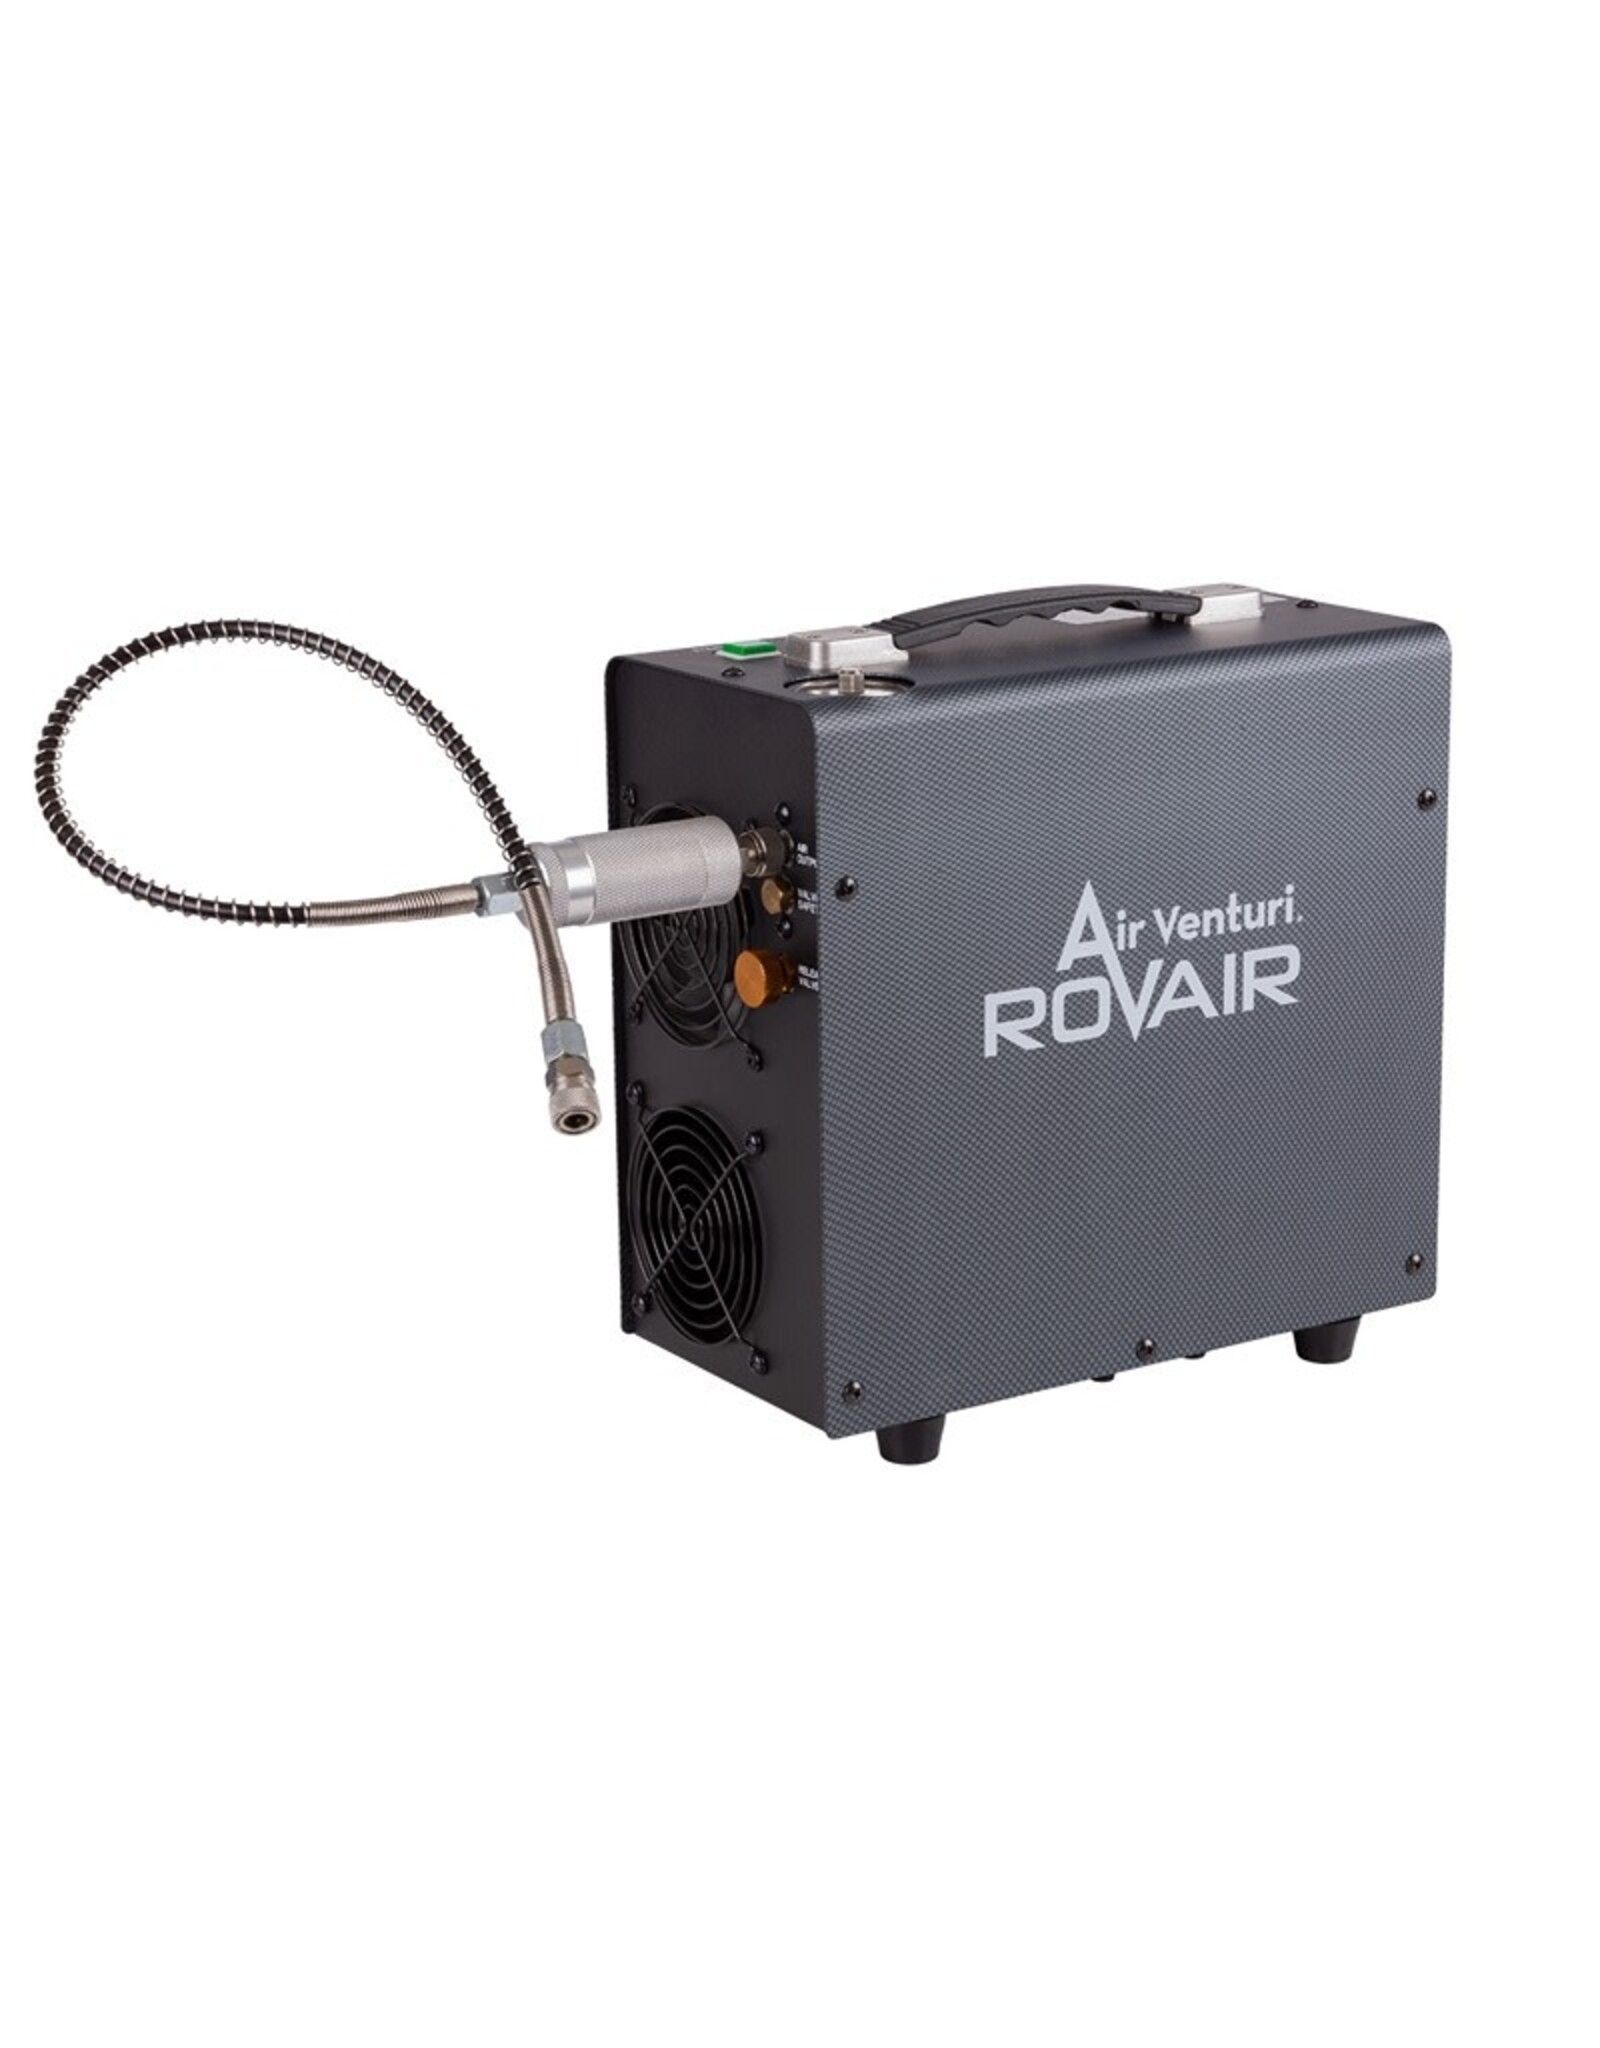 Air Venturi RovAir 4500 Portable Compressor by Air Venturi